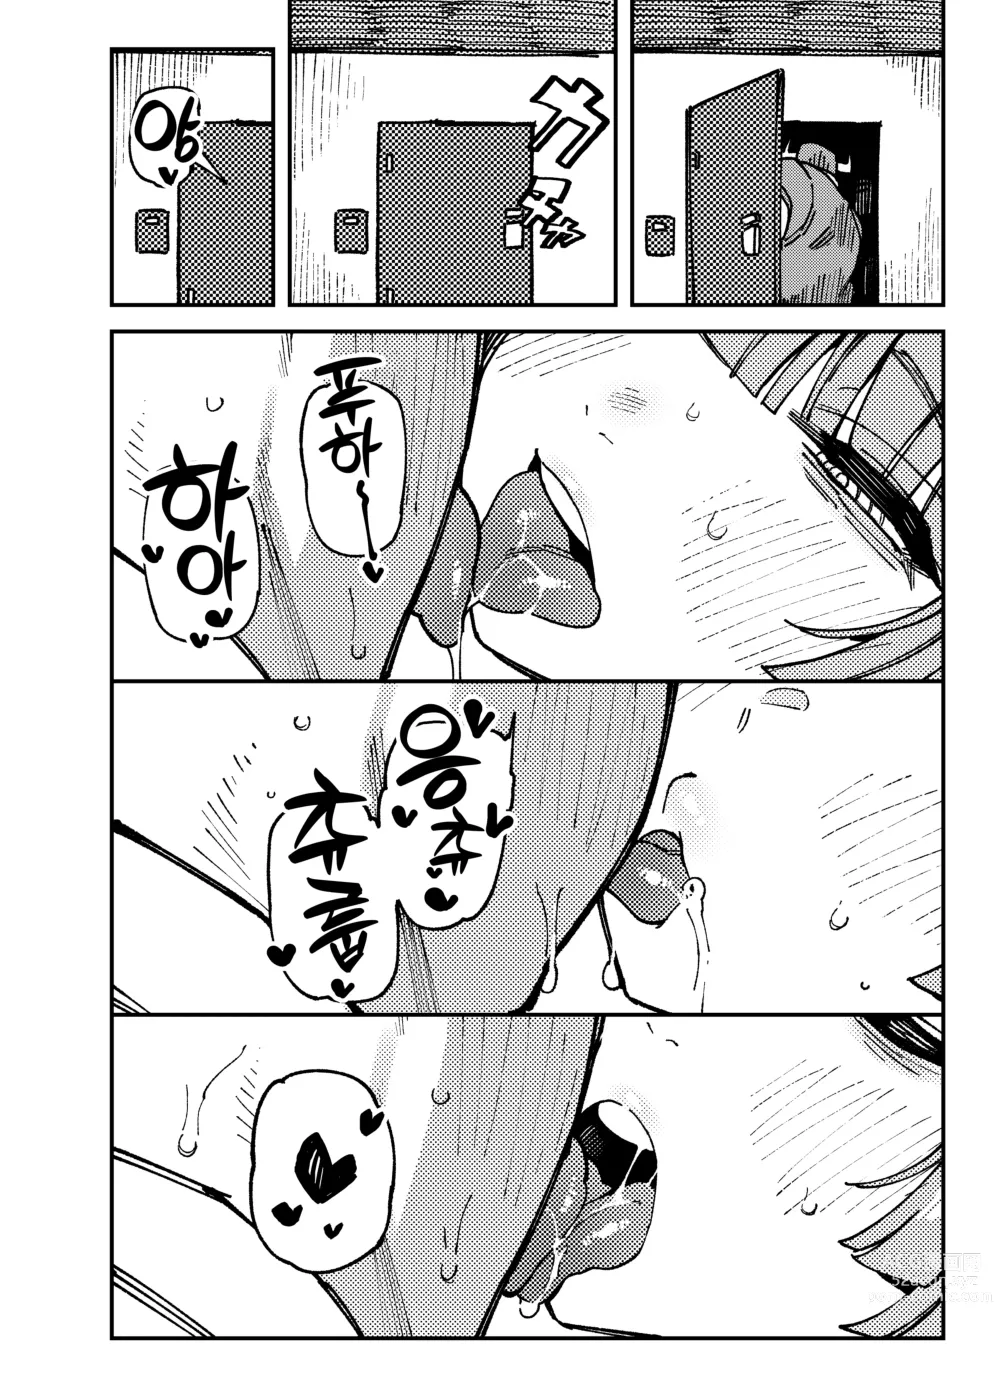 Page 11 of doujinshi 집이 너무 습해서 생긴 환각을 유발하는 버섯을 잘못 먹고 발정난 뒤의 이야기